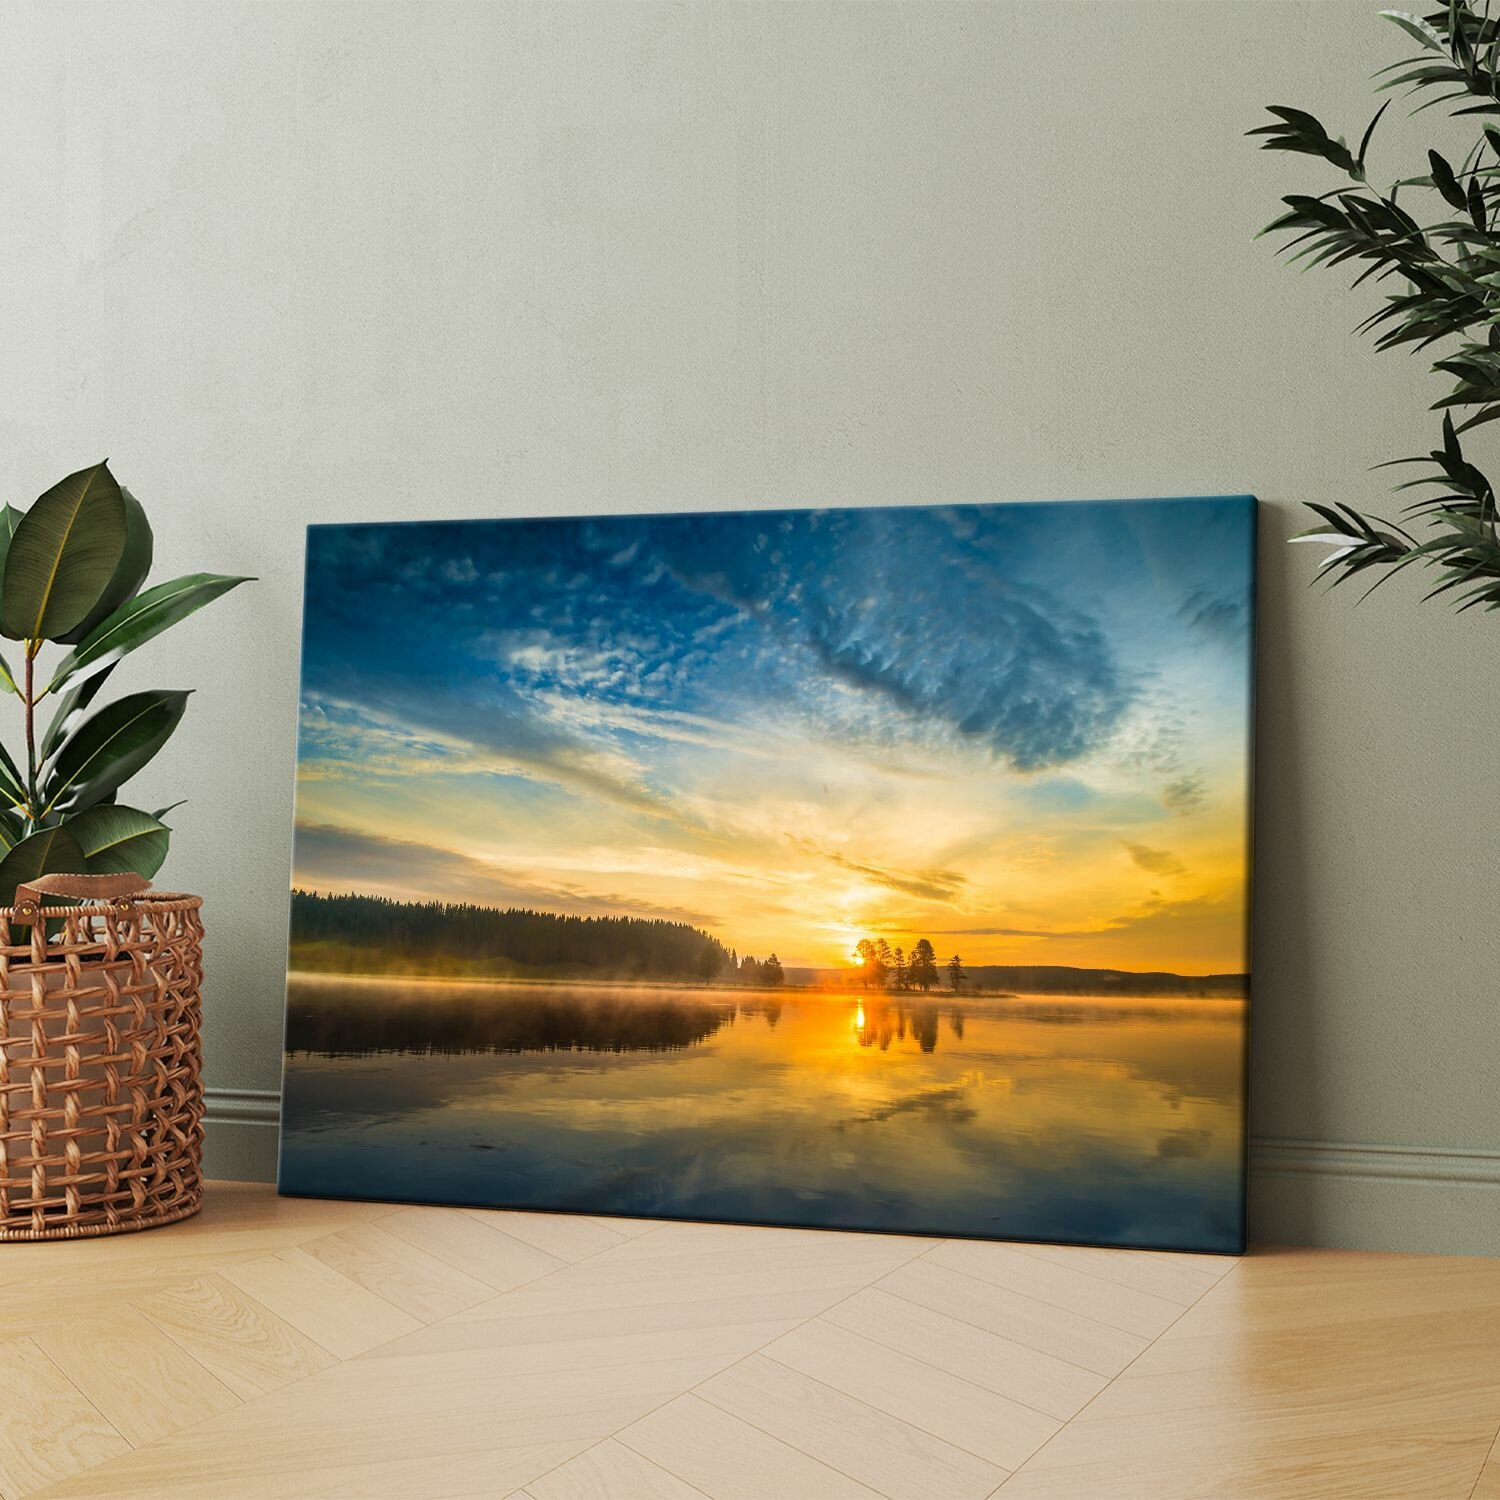 Картина на холсте (Озеро с лодкой в воде на закате) 40x60 см. Интерьерная, на стену.